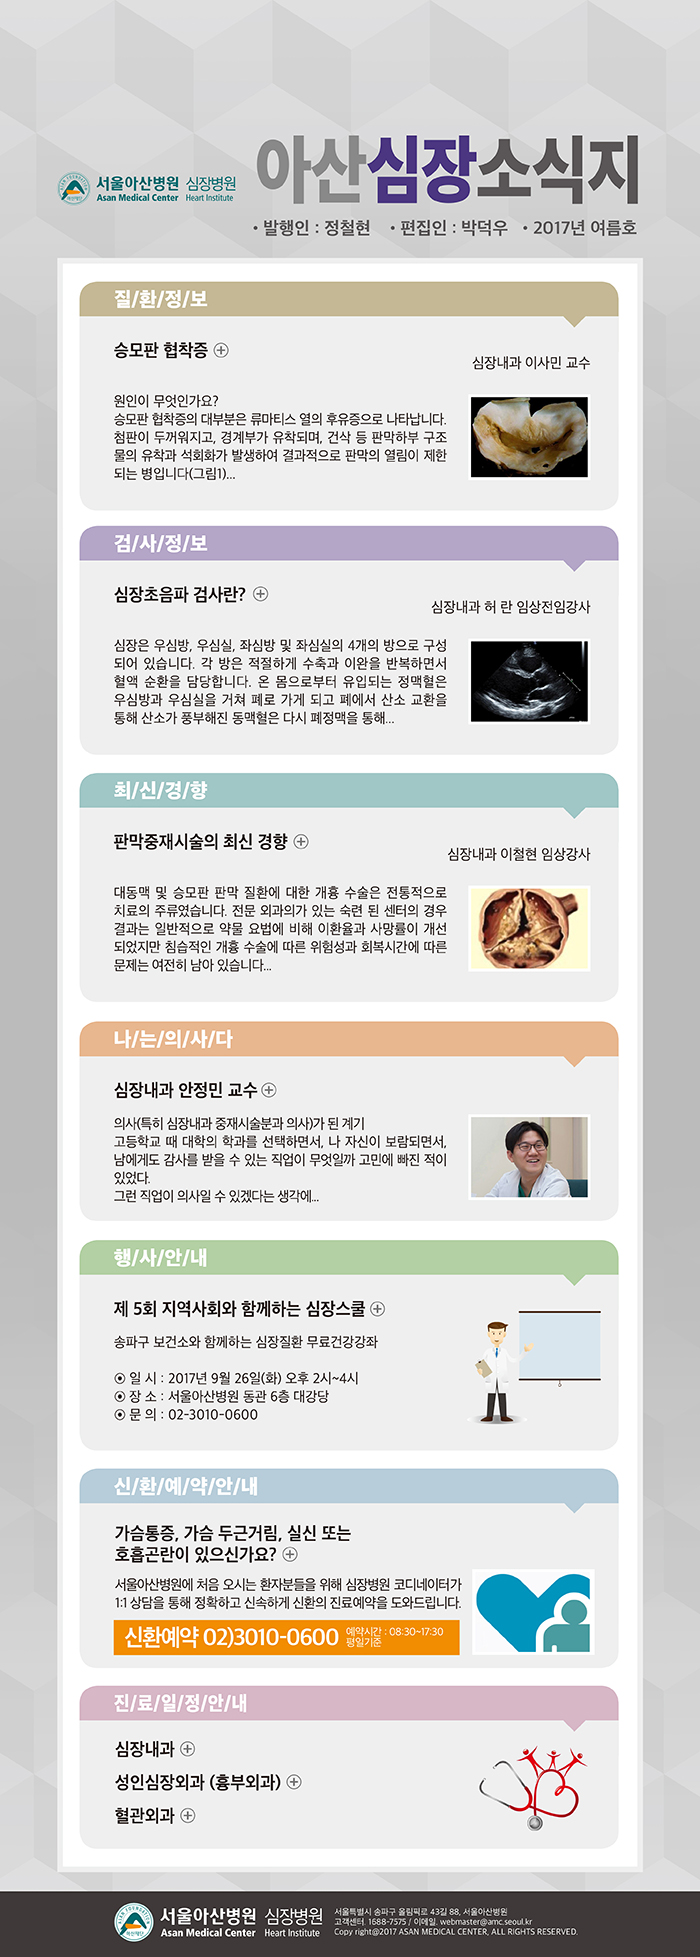 서울아산병원 심장병원 CARDIOLOGY UPDATE - 2017년 6월